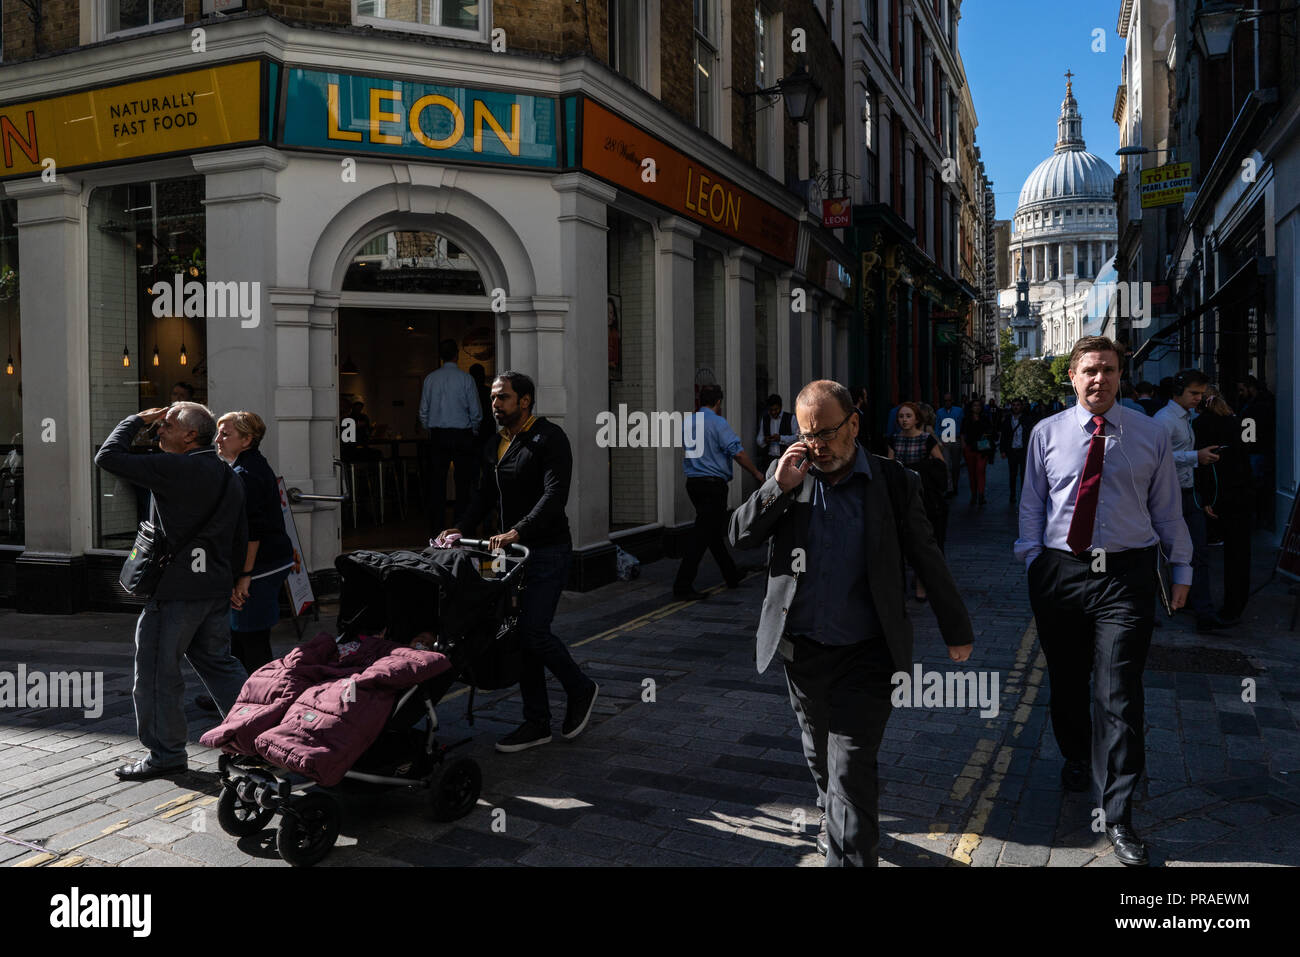 Scène de rue général des travailleurs de la ville de Londres s'occuper de leurs affaires pendant leur pause déjeuner près de la Cathédrale St Paul London UK Banque D'Images